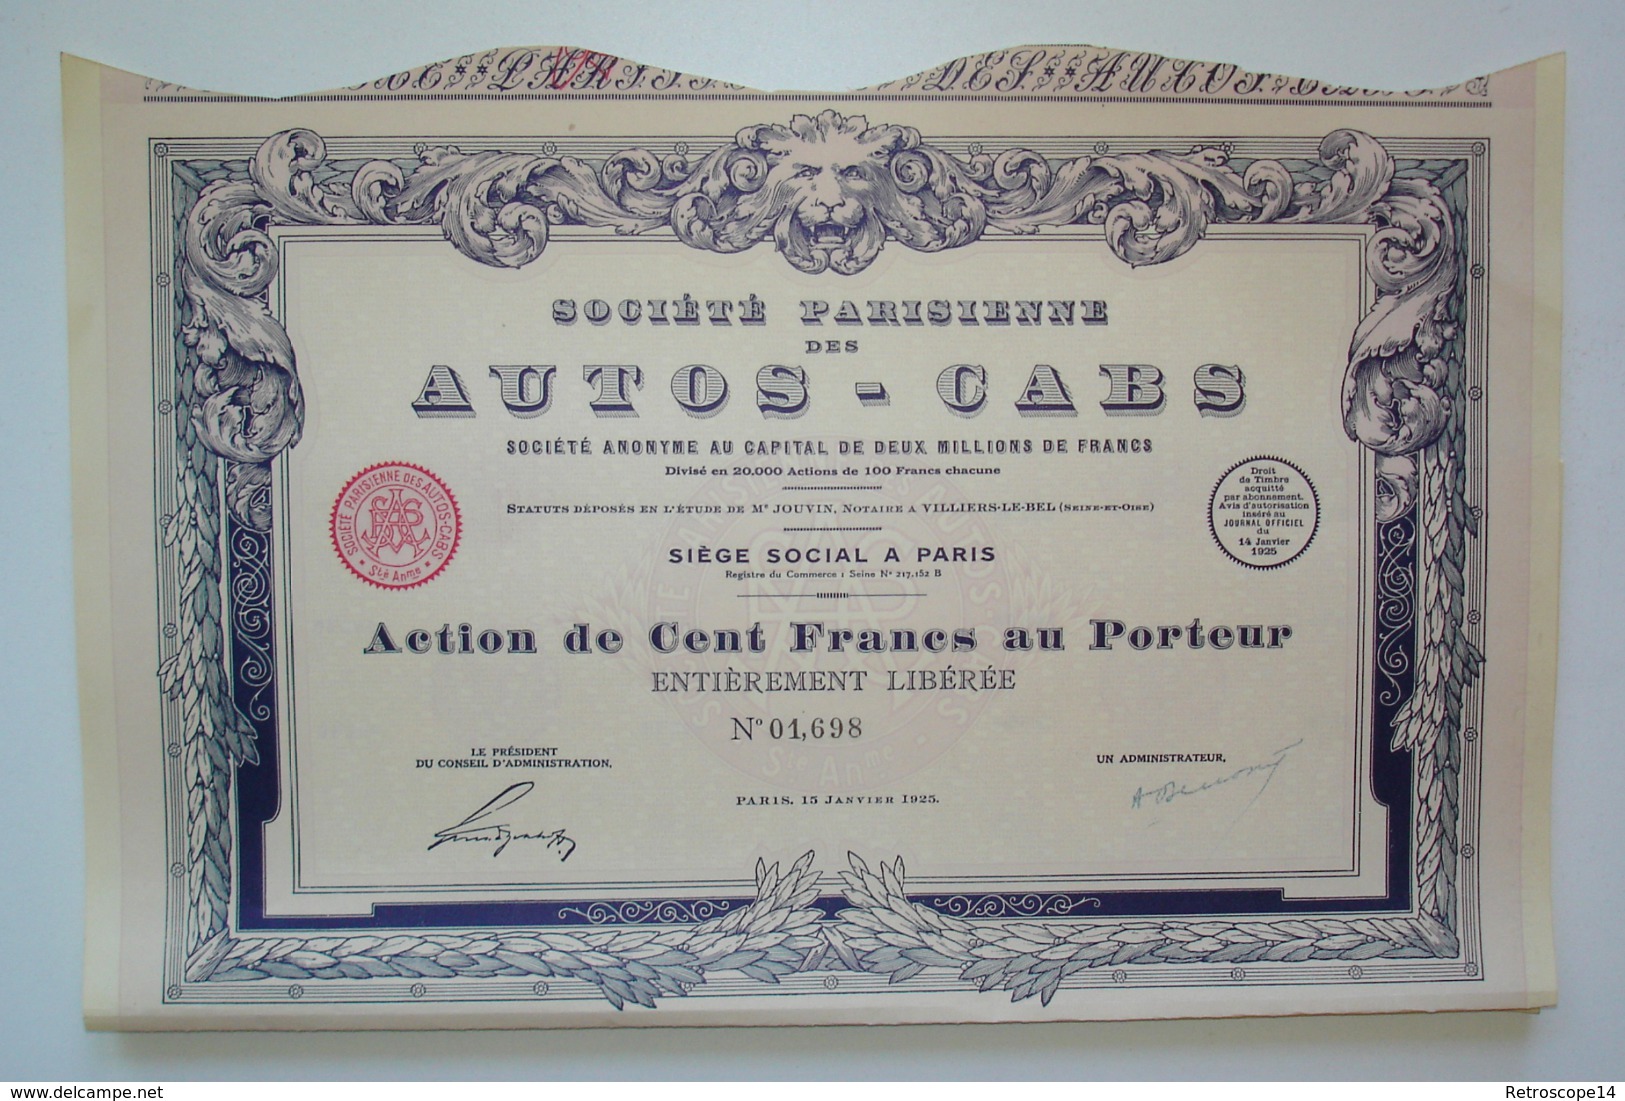 RARE. 1925. SOCIÉTÉ DES AUTOS-CABS Avec Coupons. ART DÉCO. - Automobilismo